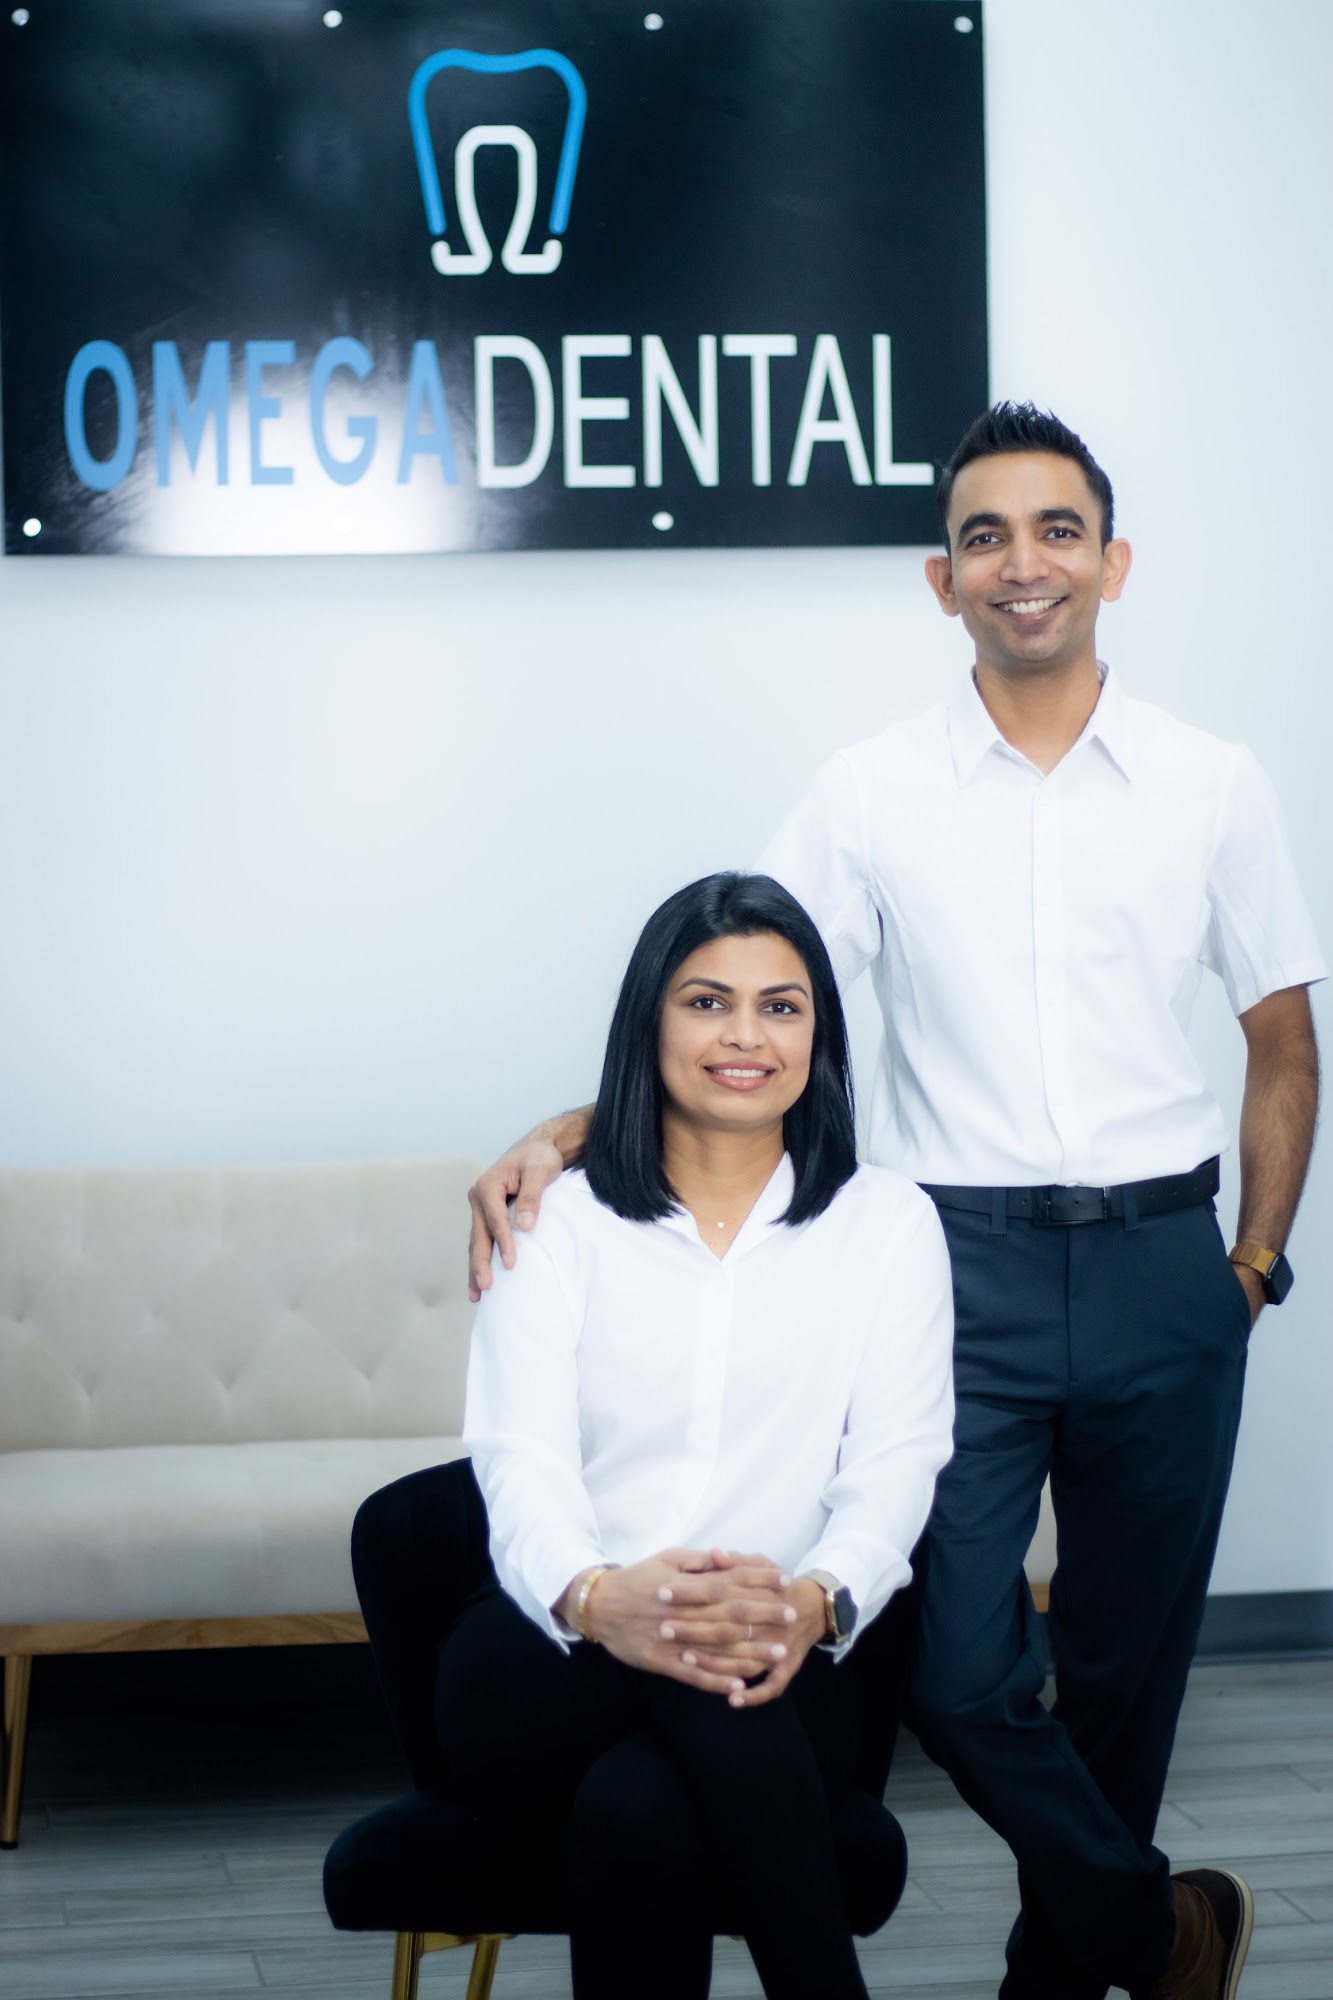 Omega Dental